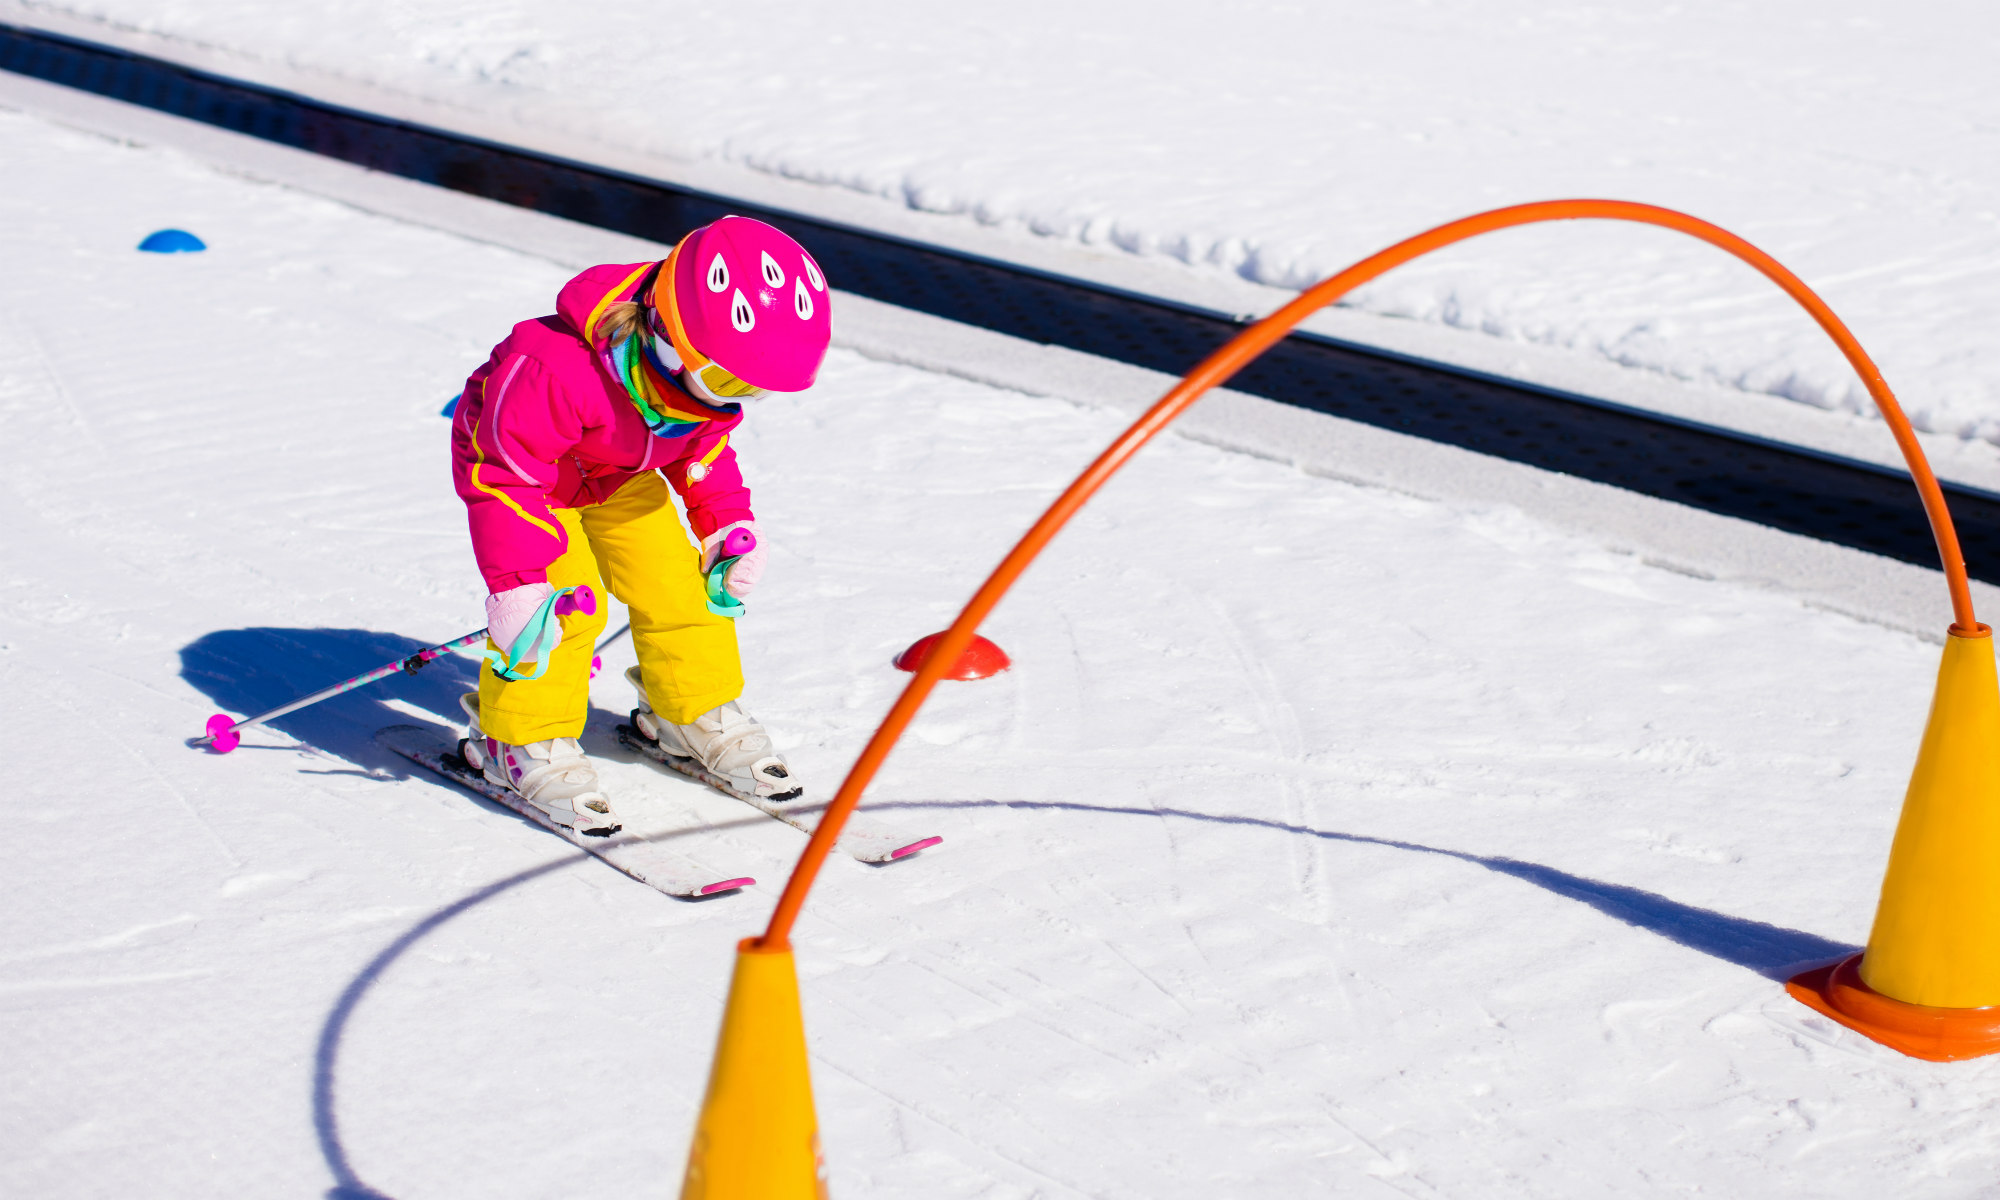 Una piccola sciatrice si appresta a sciare attraverso un ostacolo sulla neve a Bormio.